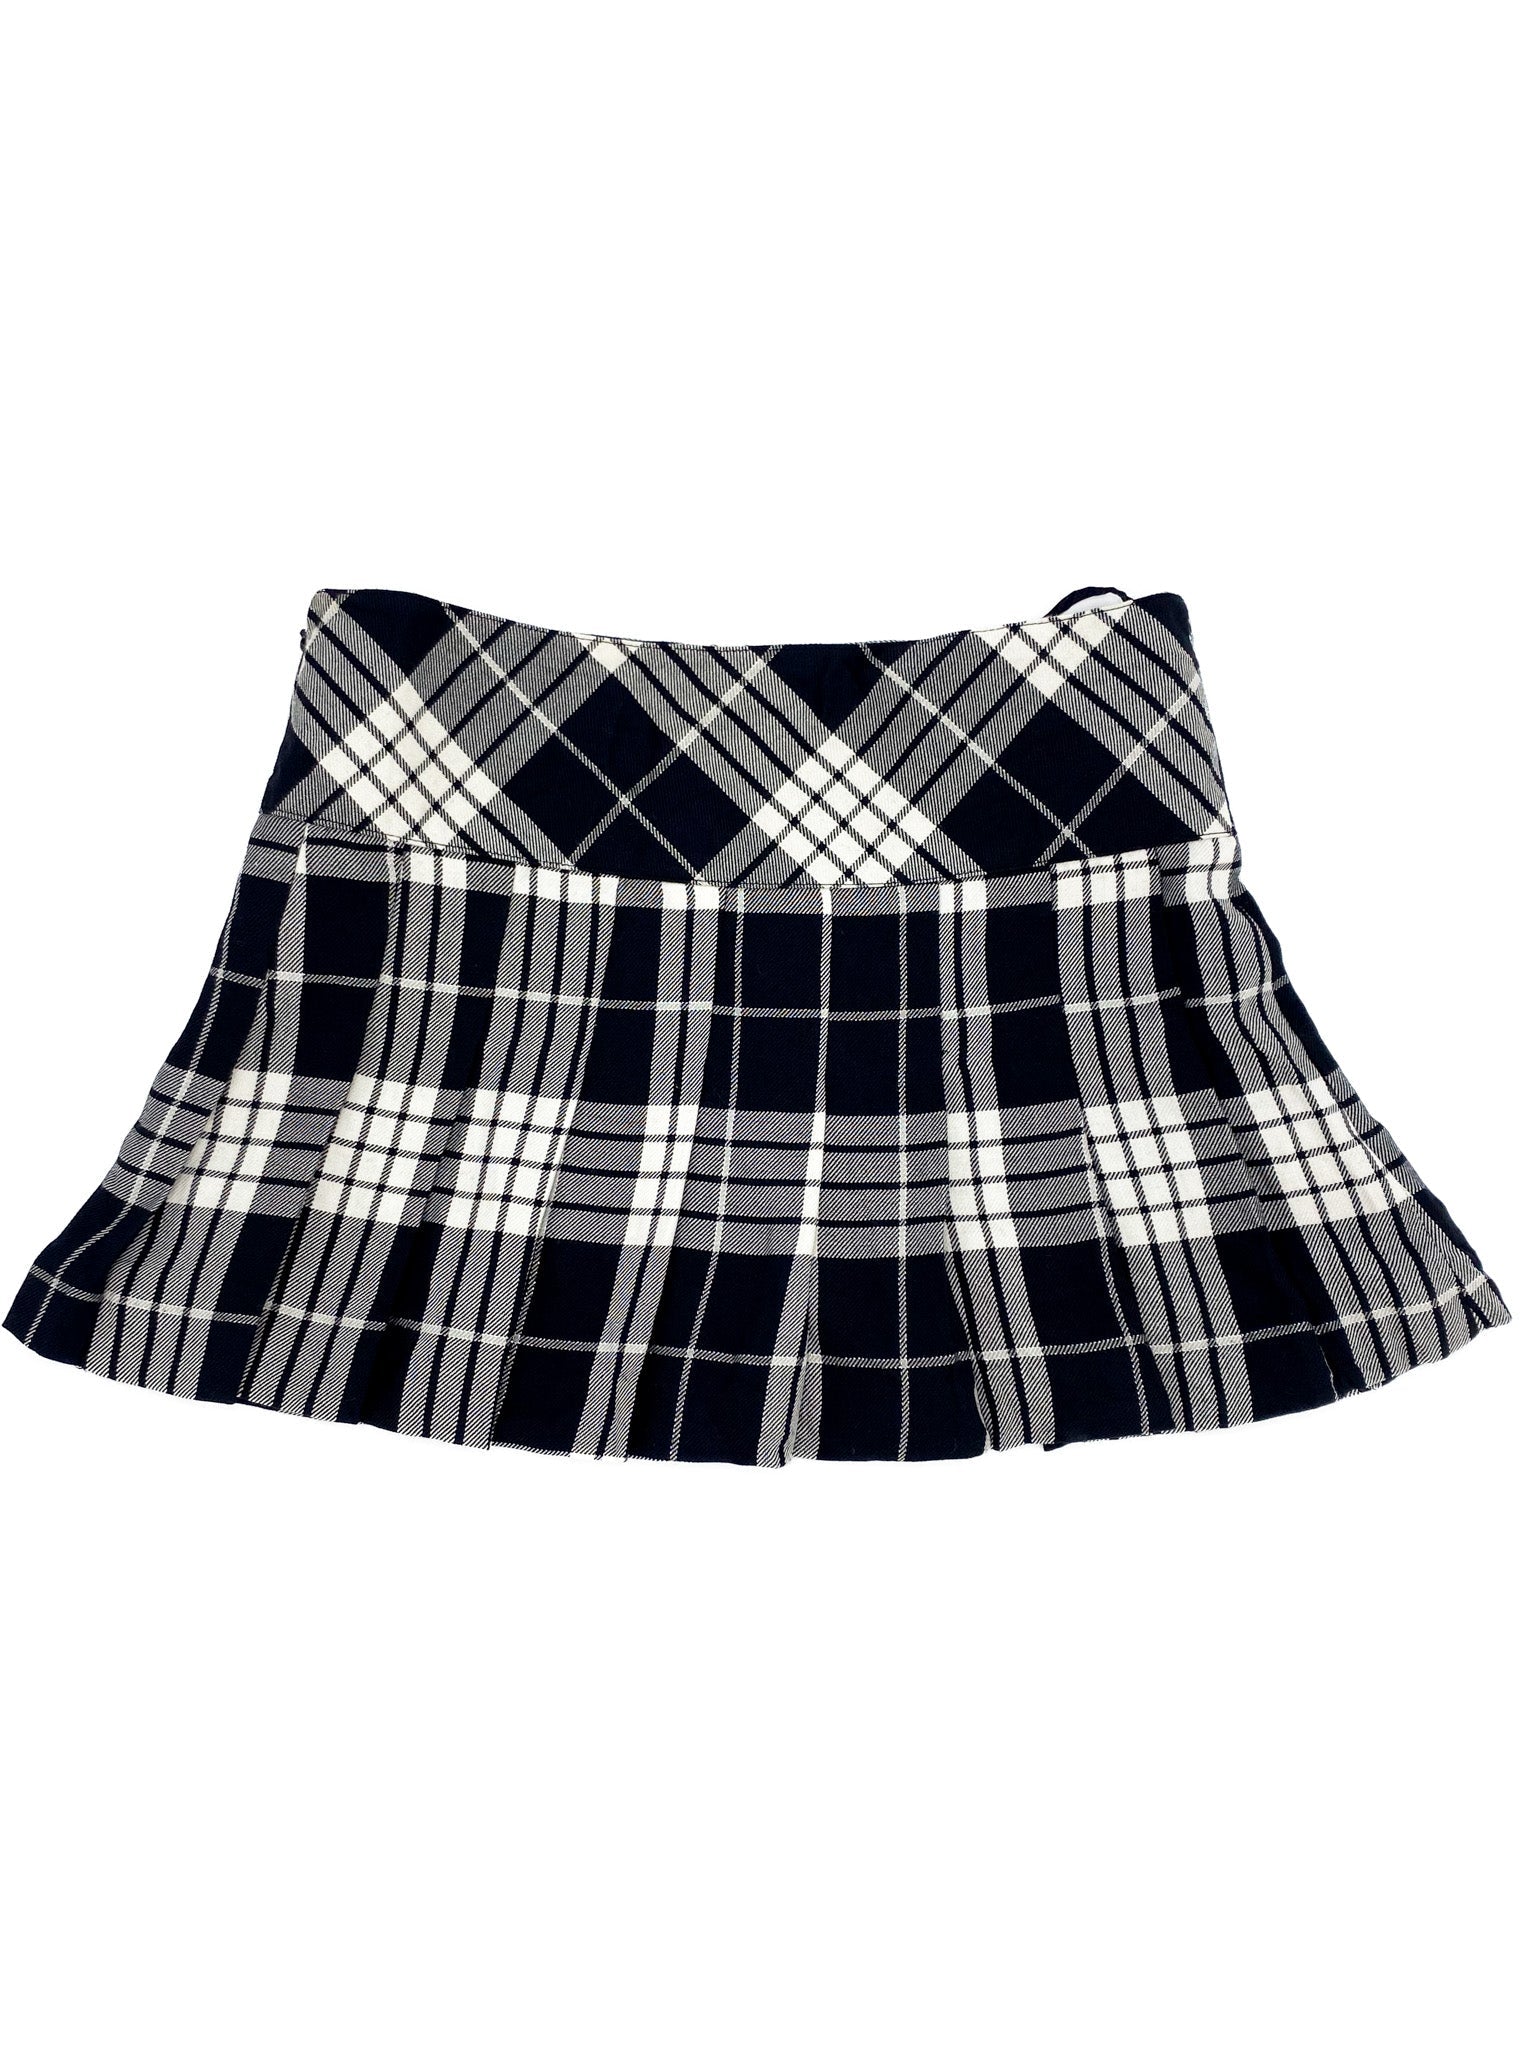 Vintage 00's Black/White Tartan Mini Skirt - XS - Playground Vintage